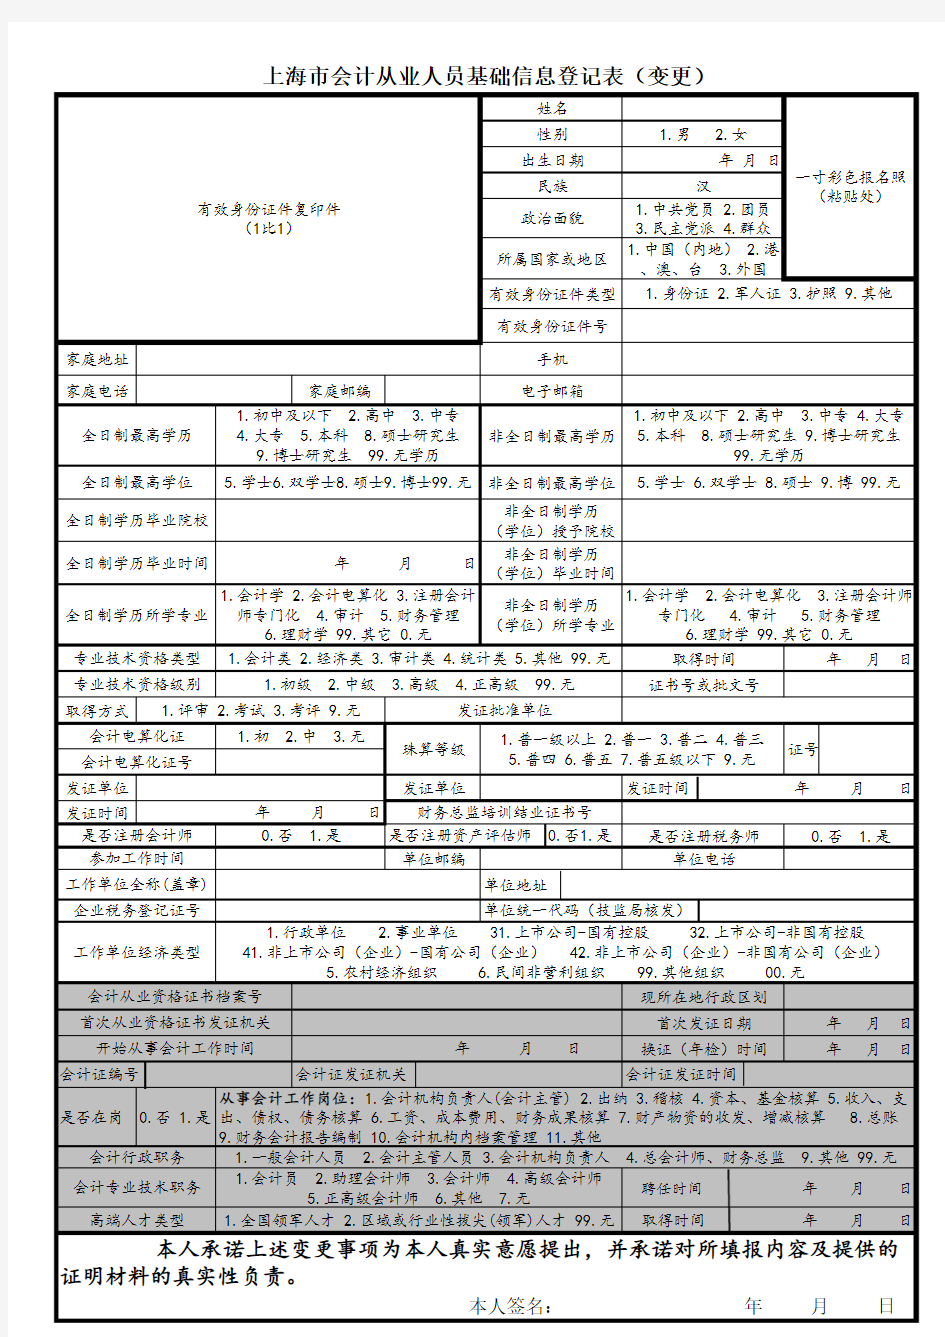 上海市会计从业人员基础信息登记表(变更)